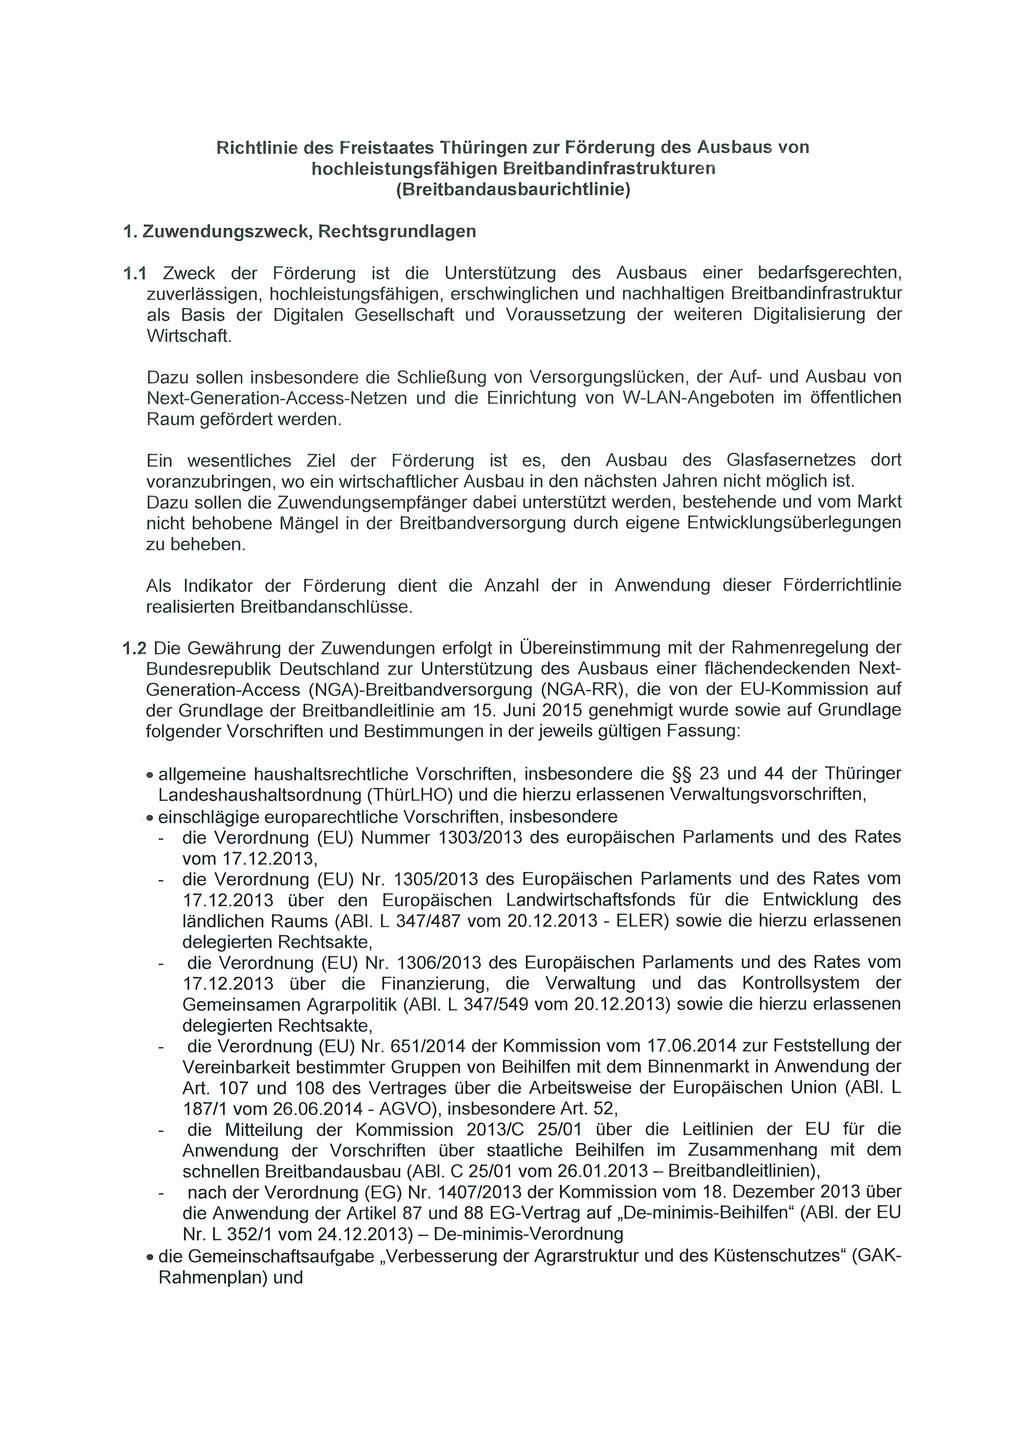 Richtlinie des Freistaates Thüringen zur Förderung des Ausbaus von hochleistungsfähigen Breitbandinfrastrukturen (Breitbandausbaurichtlinie) 1. Zuwendungszweck, Rechtsgrundlagen 1.